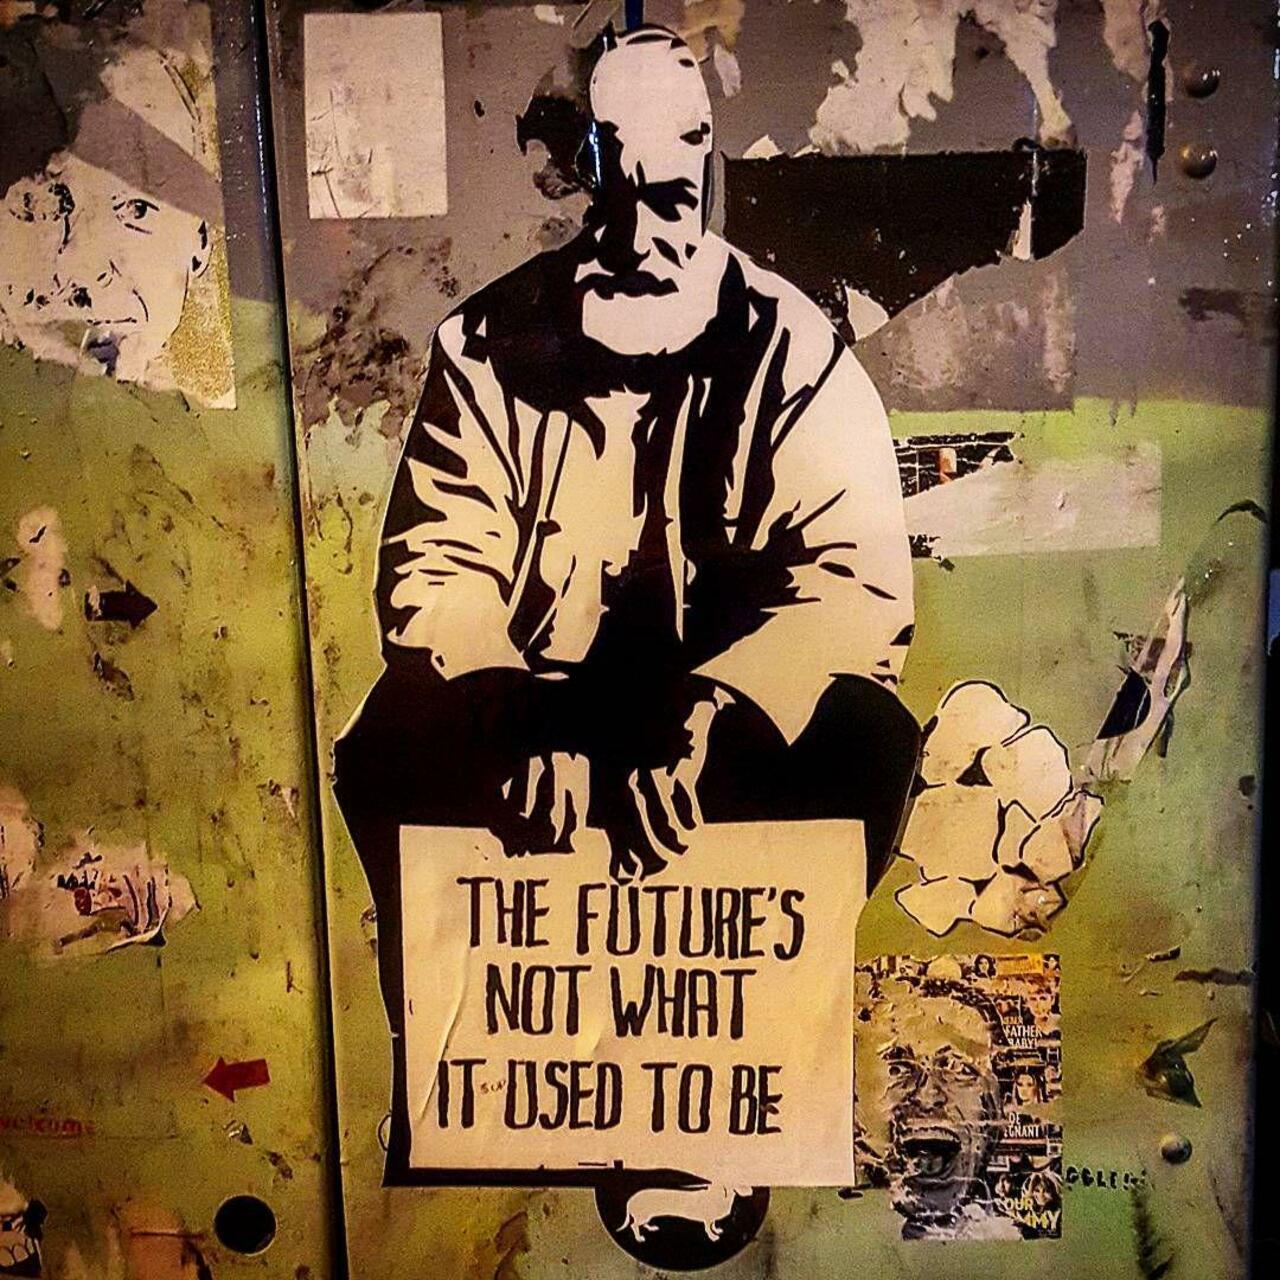 RT @isabelbarranco_: "El futuro no es lo que solía ser" (autor desconocido)

#graffiti #streetart #arteurbano #Ireland http://t.co/UQC9OMy8tF